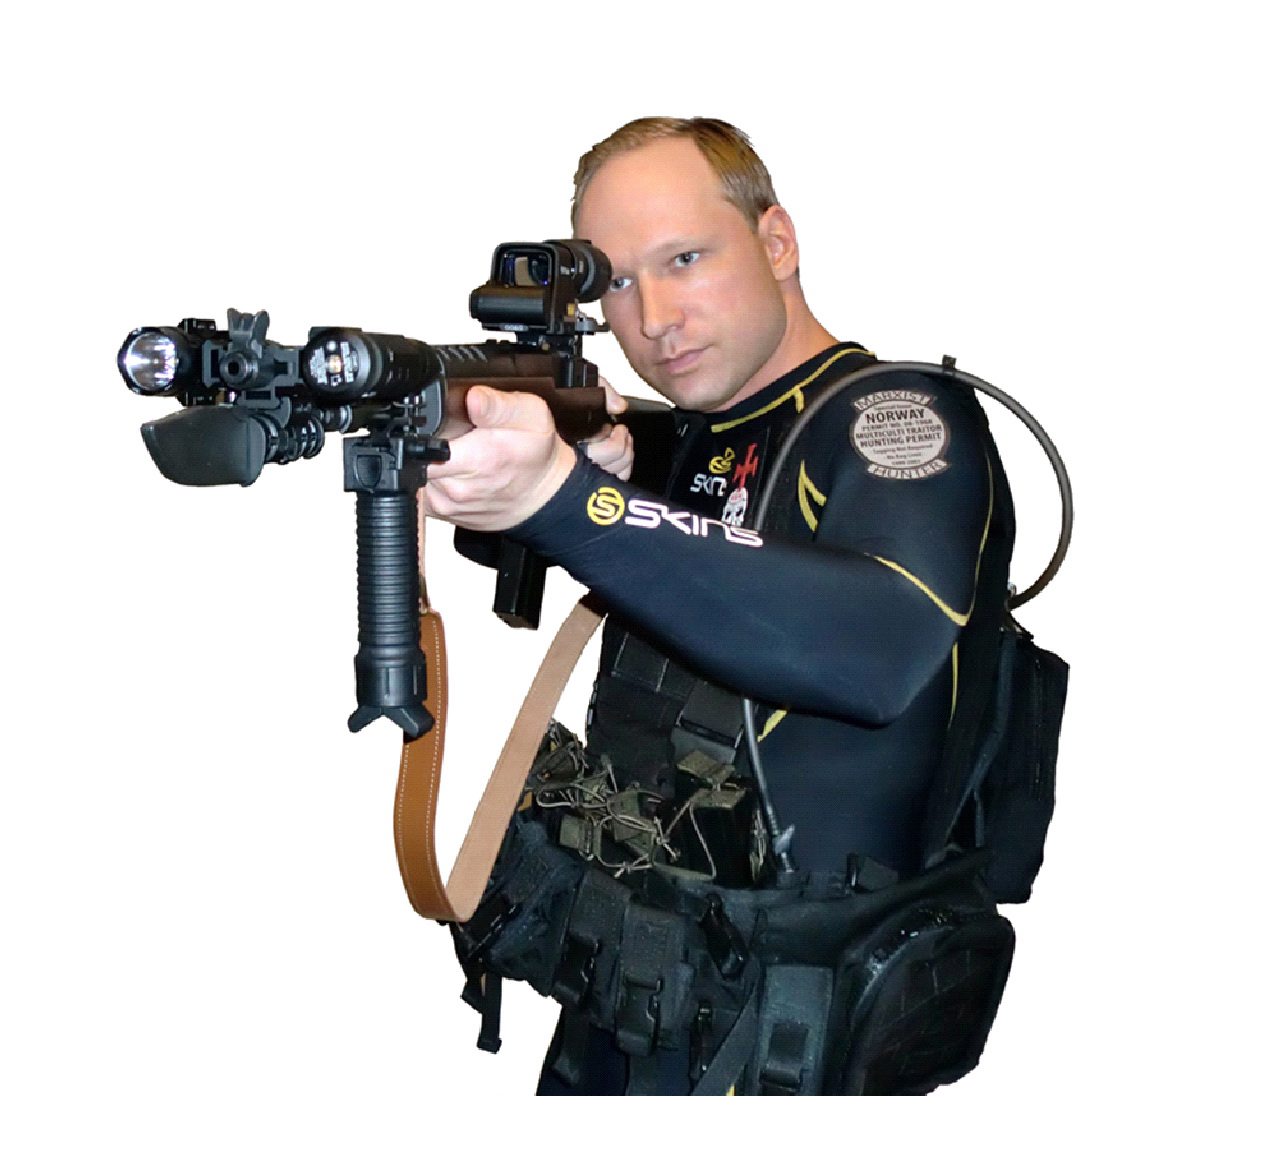 Снимка в сайт показва Брайвик готов да стреля с автомат